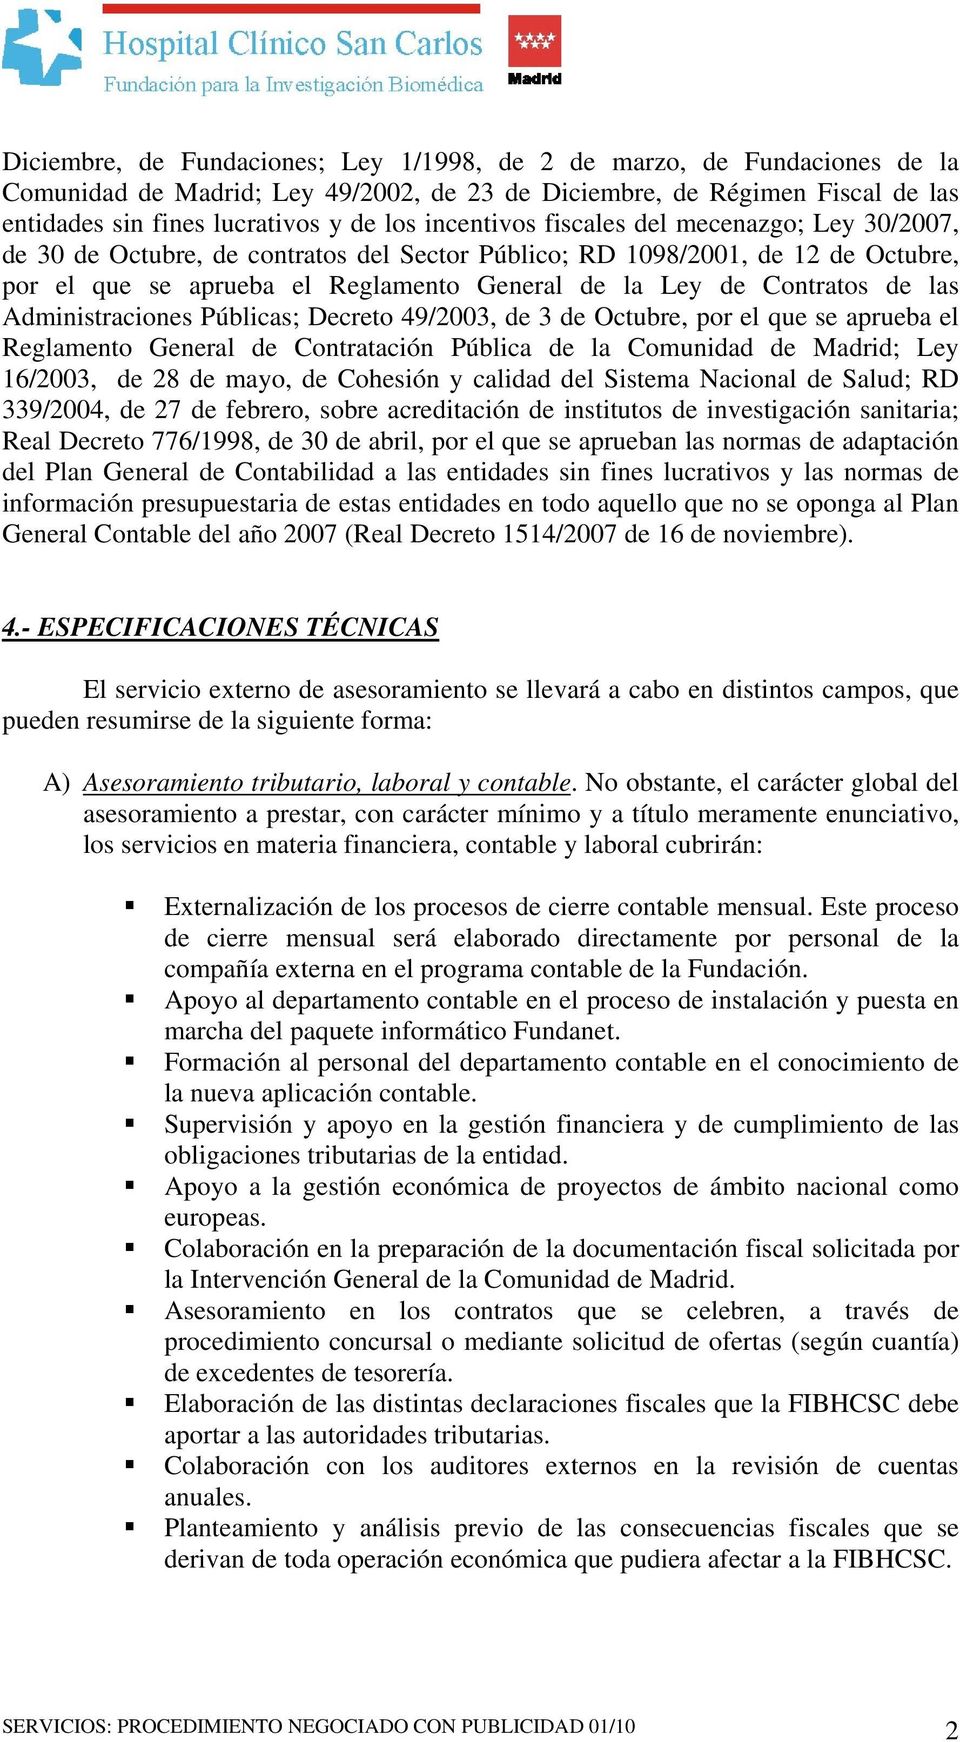 de las Administraciones Públicas; Decreto 49/2003, de 3 de Octubre, por el que se aprueba el Reglamento General de Contratación Pública de la Comunidad de Madrid; Ley 16/2003, de 28 de mayo, de